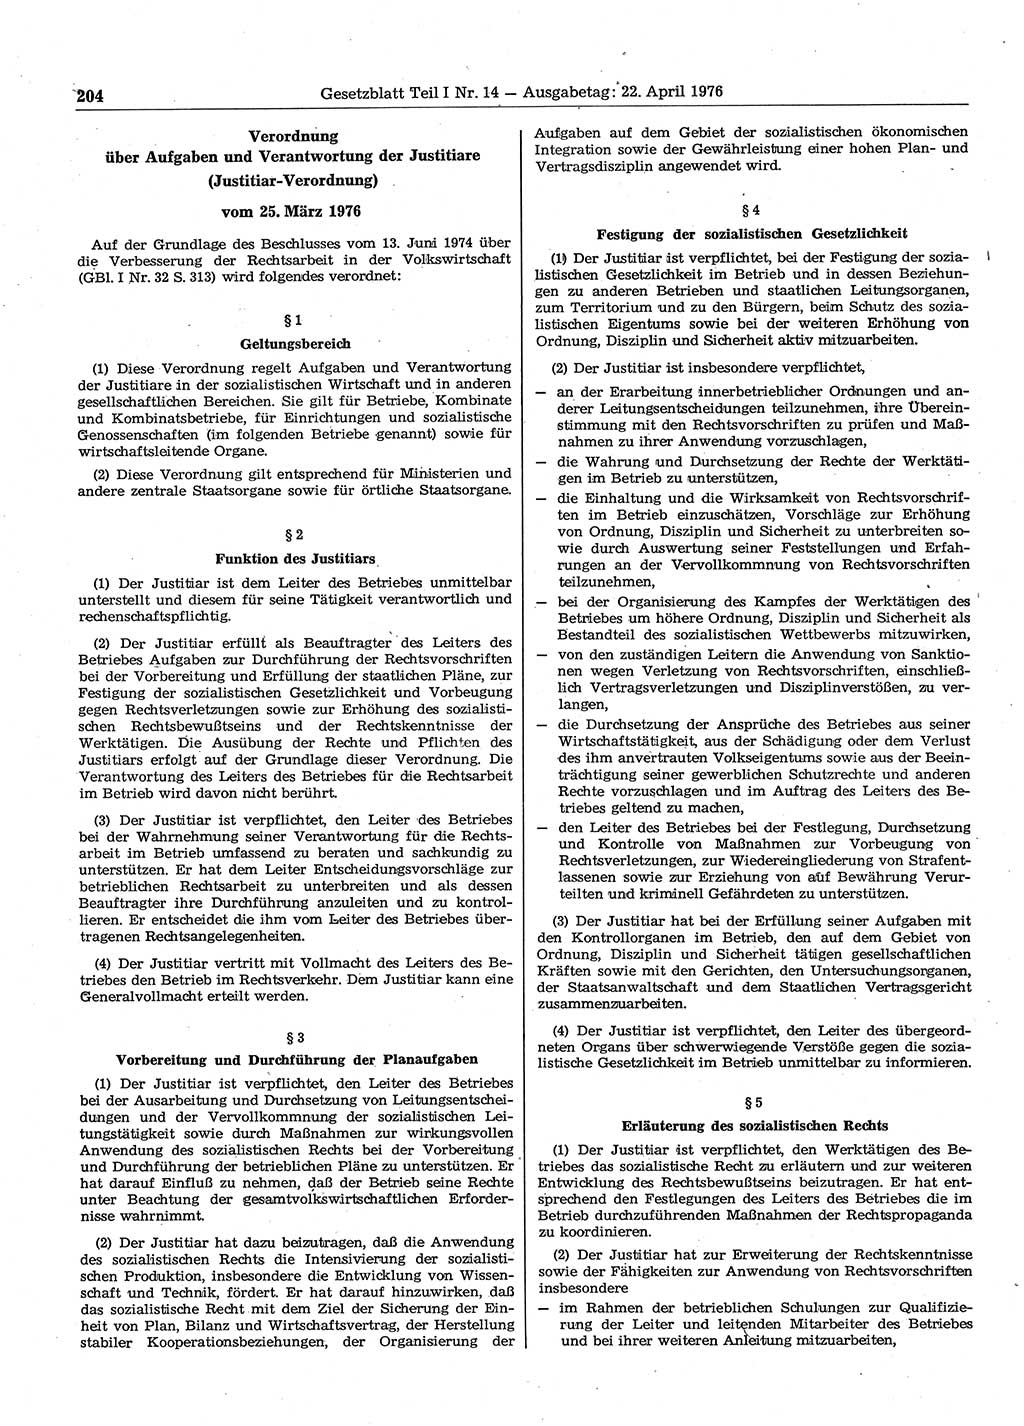 Gesetzblatt (GBl.) der Deutschen Demokratischen Republik (DDR) Teil Ⅰ 1976, Seite 204 (GBl. DDR Ⅰ 1976, S. 204)